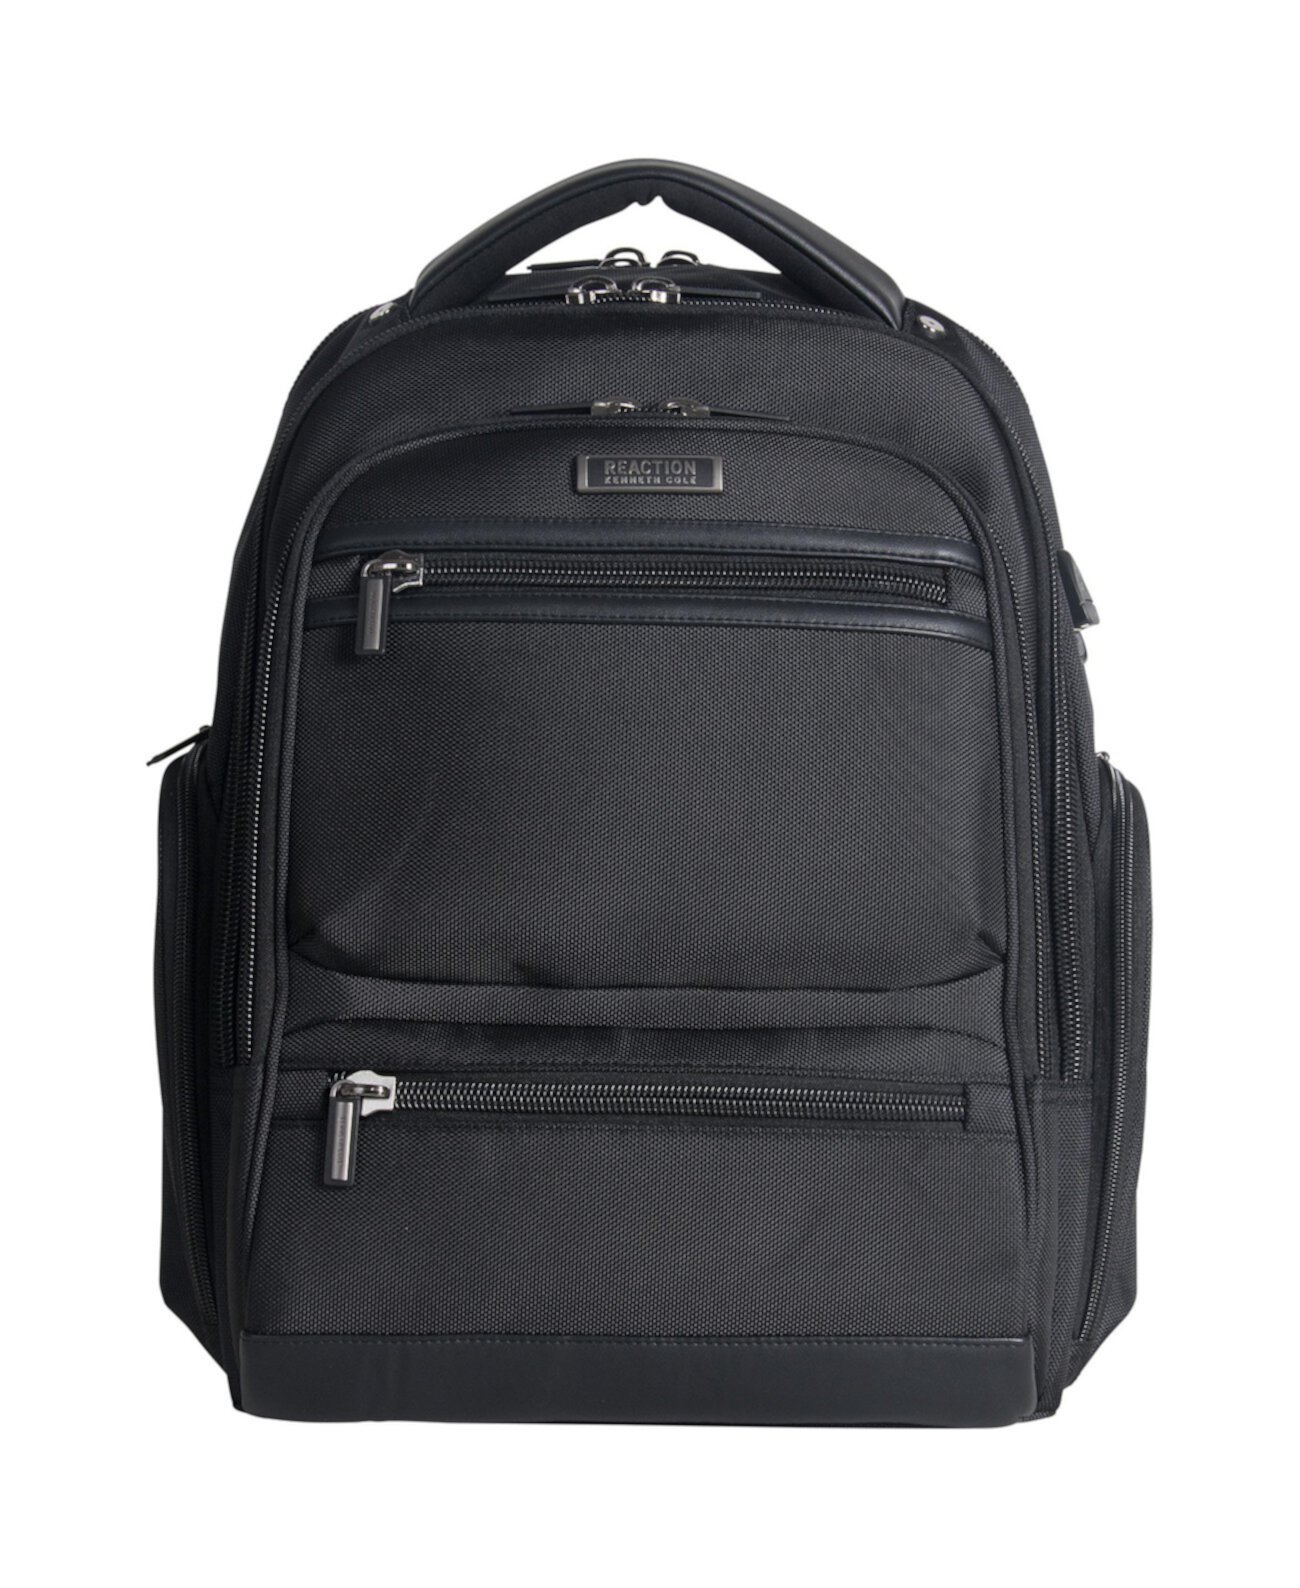 Рюкзак для ноутбука 17 дюймов с USB-портом, подходящий для контрольно-пропускных пунктов TSA Kenneth Cole